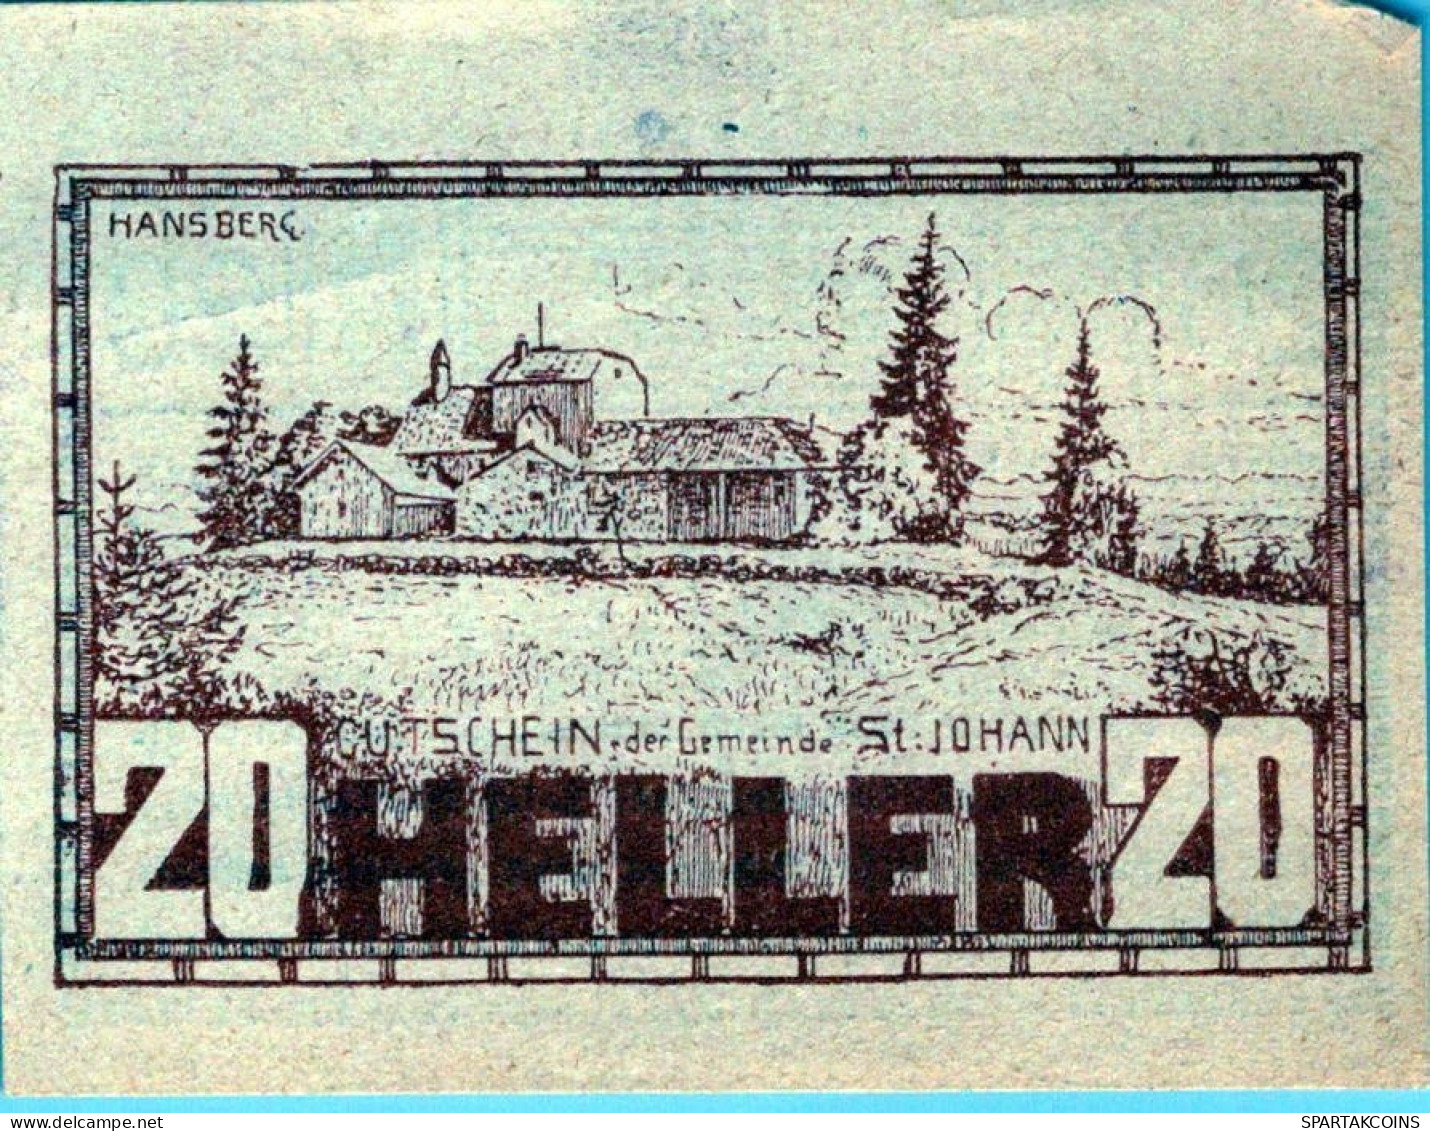 20 HELLER 1920 Stadt SANKT JOHANN AM WIMBERG Oberösterreich Österreich #PE683 - [11] Emissions Locales